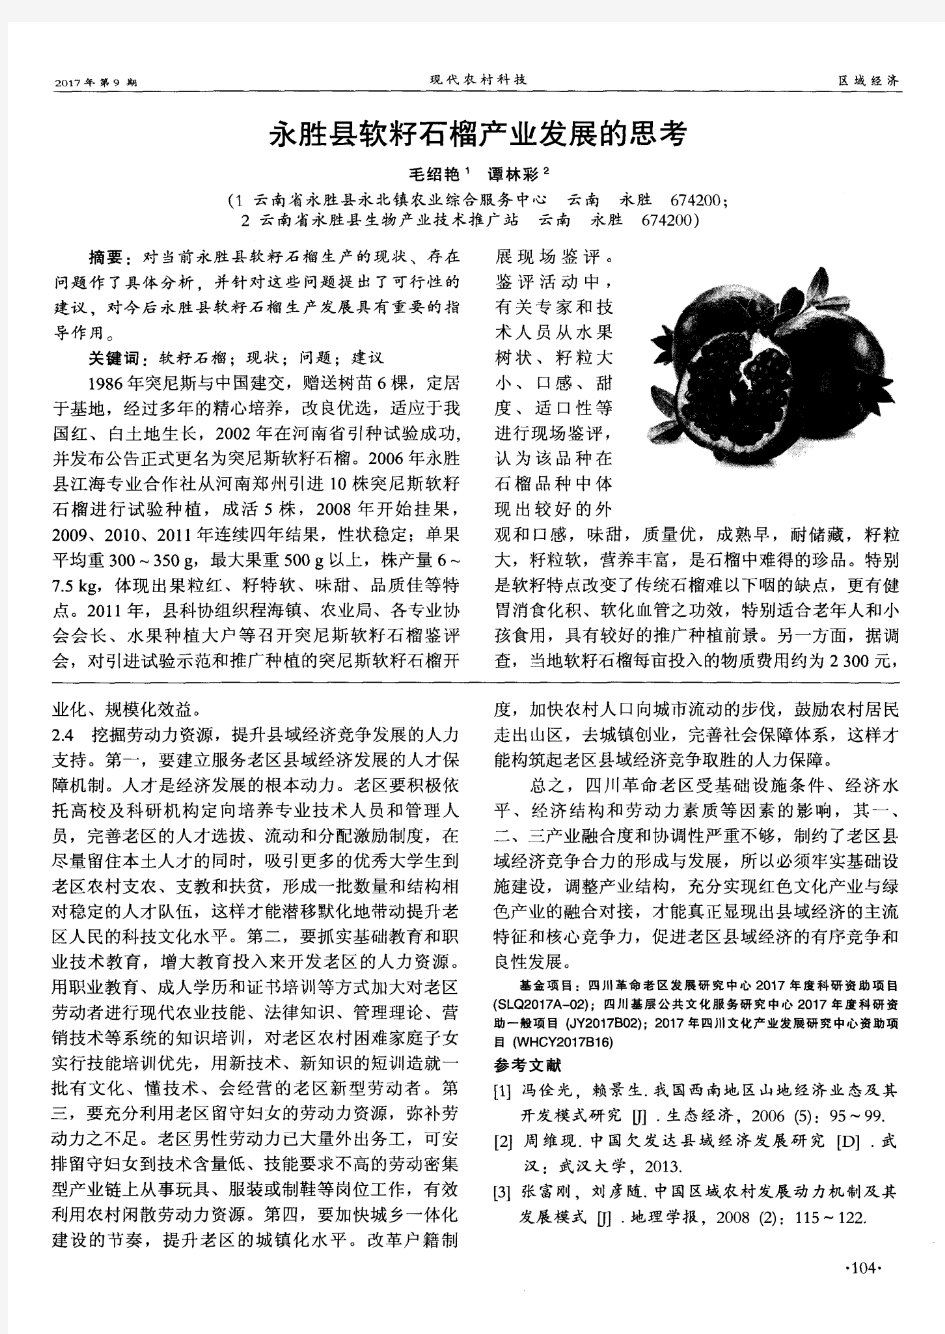 永胜县软籽石榴产业发展的思考